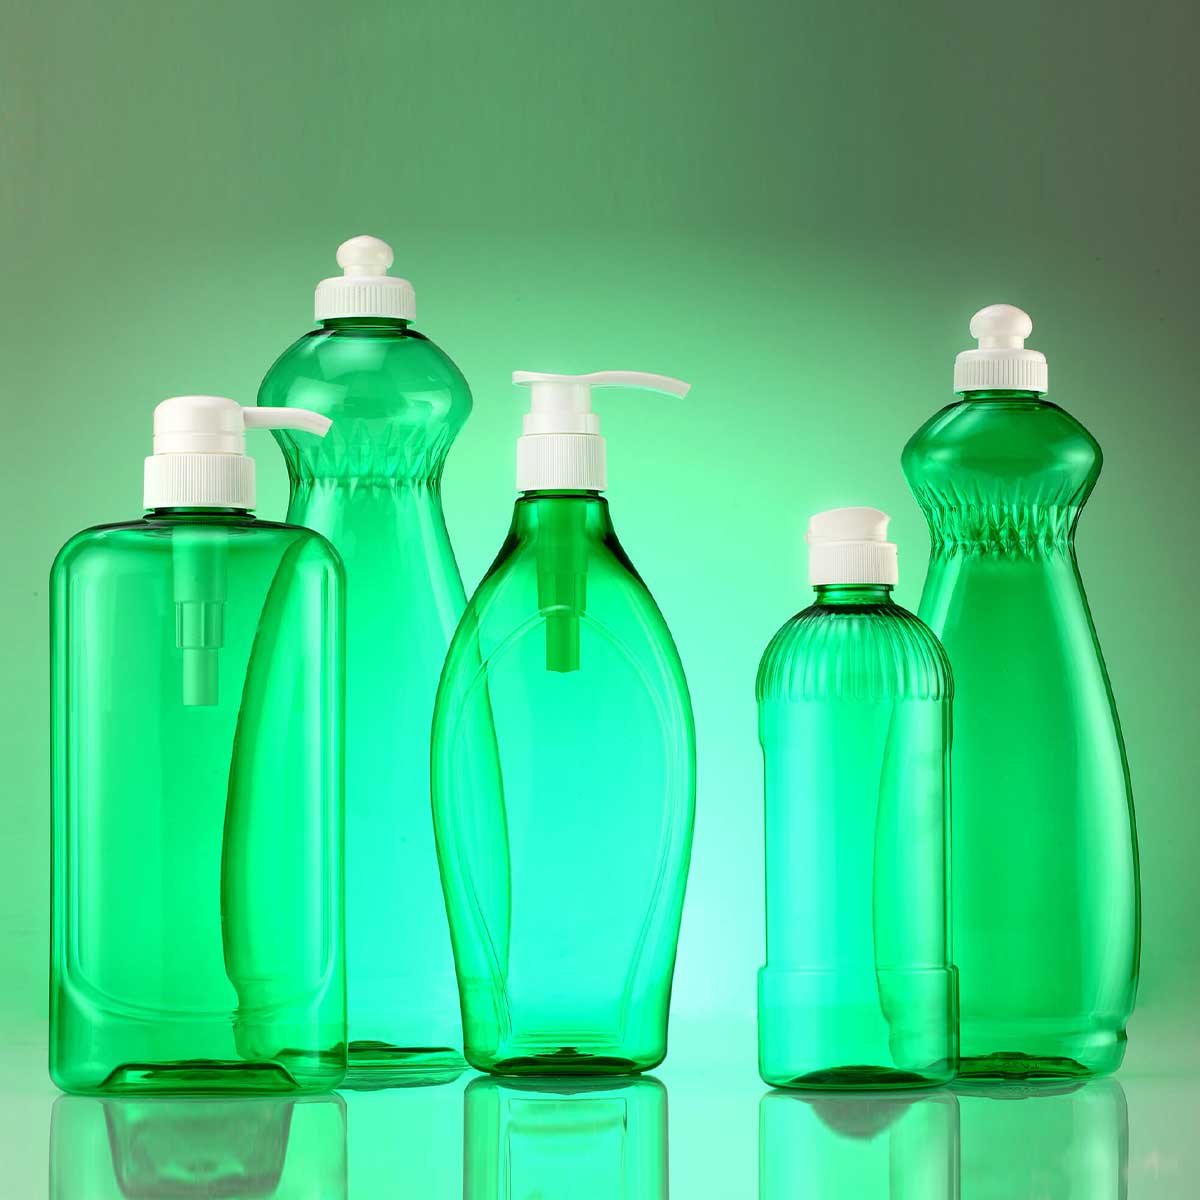 Recommended Dishwashing Soap, Detergent Bottles